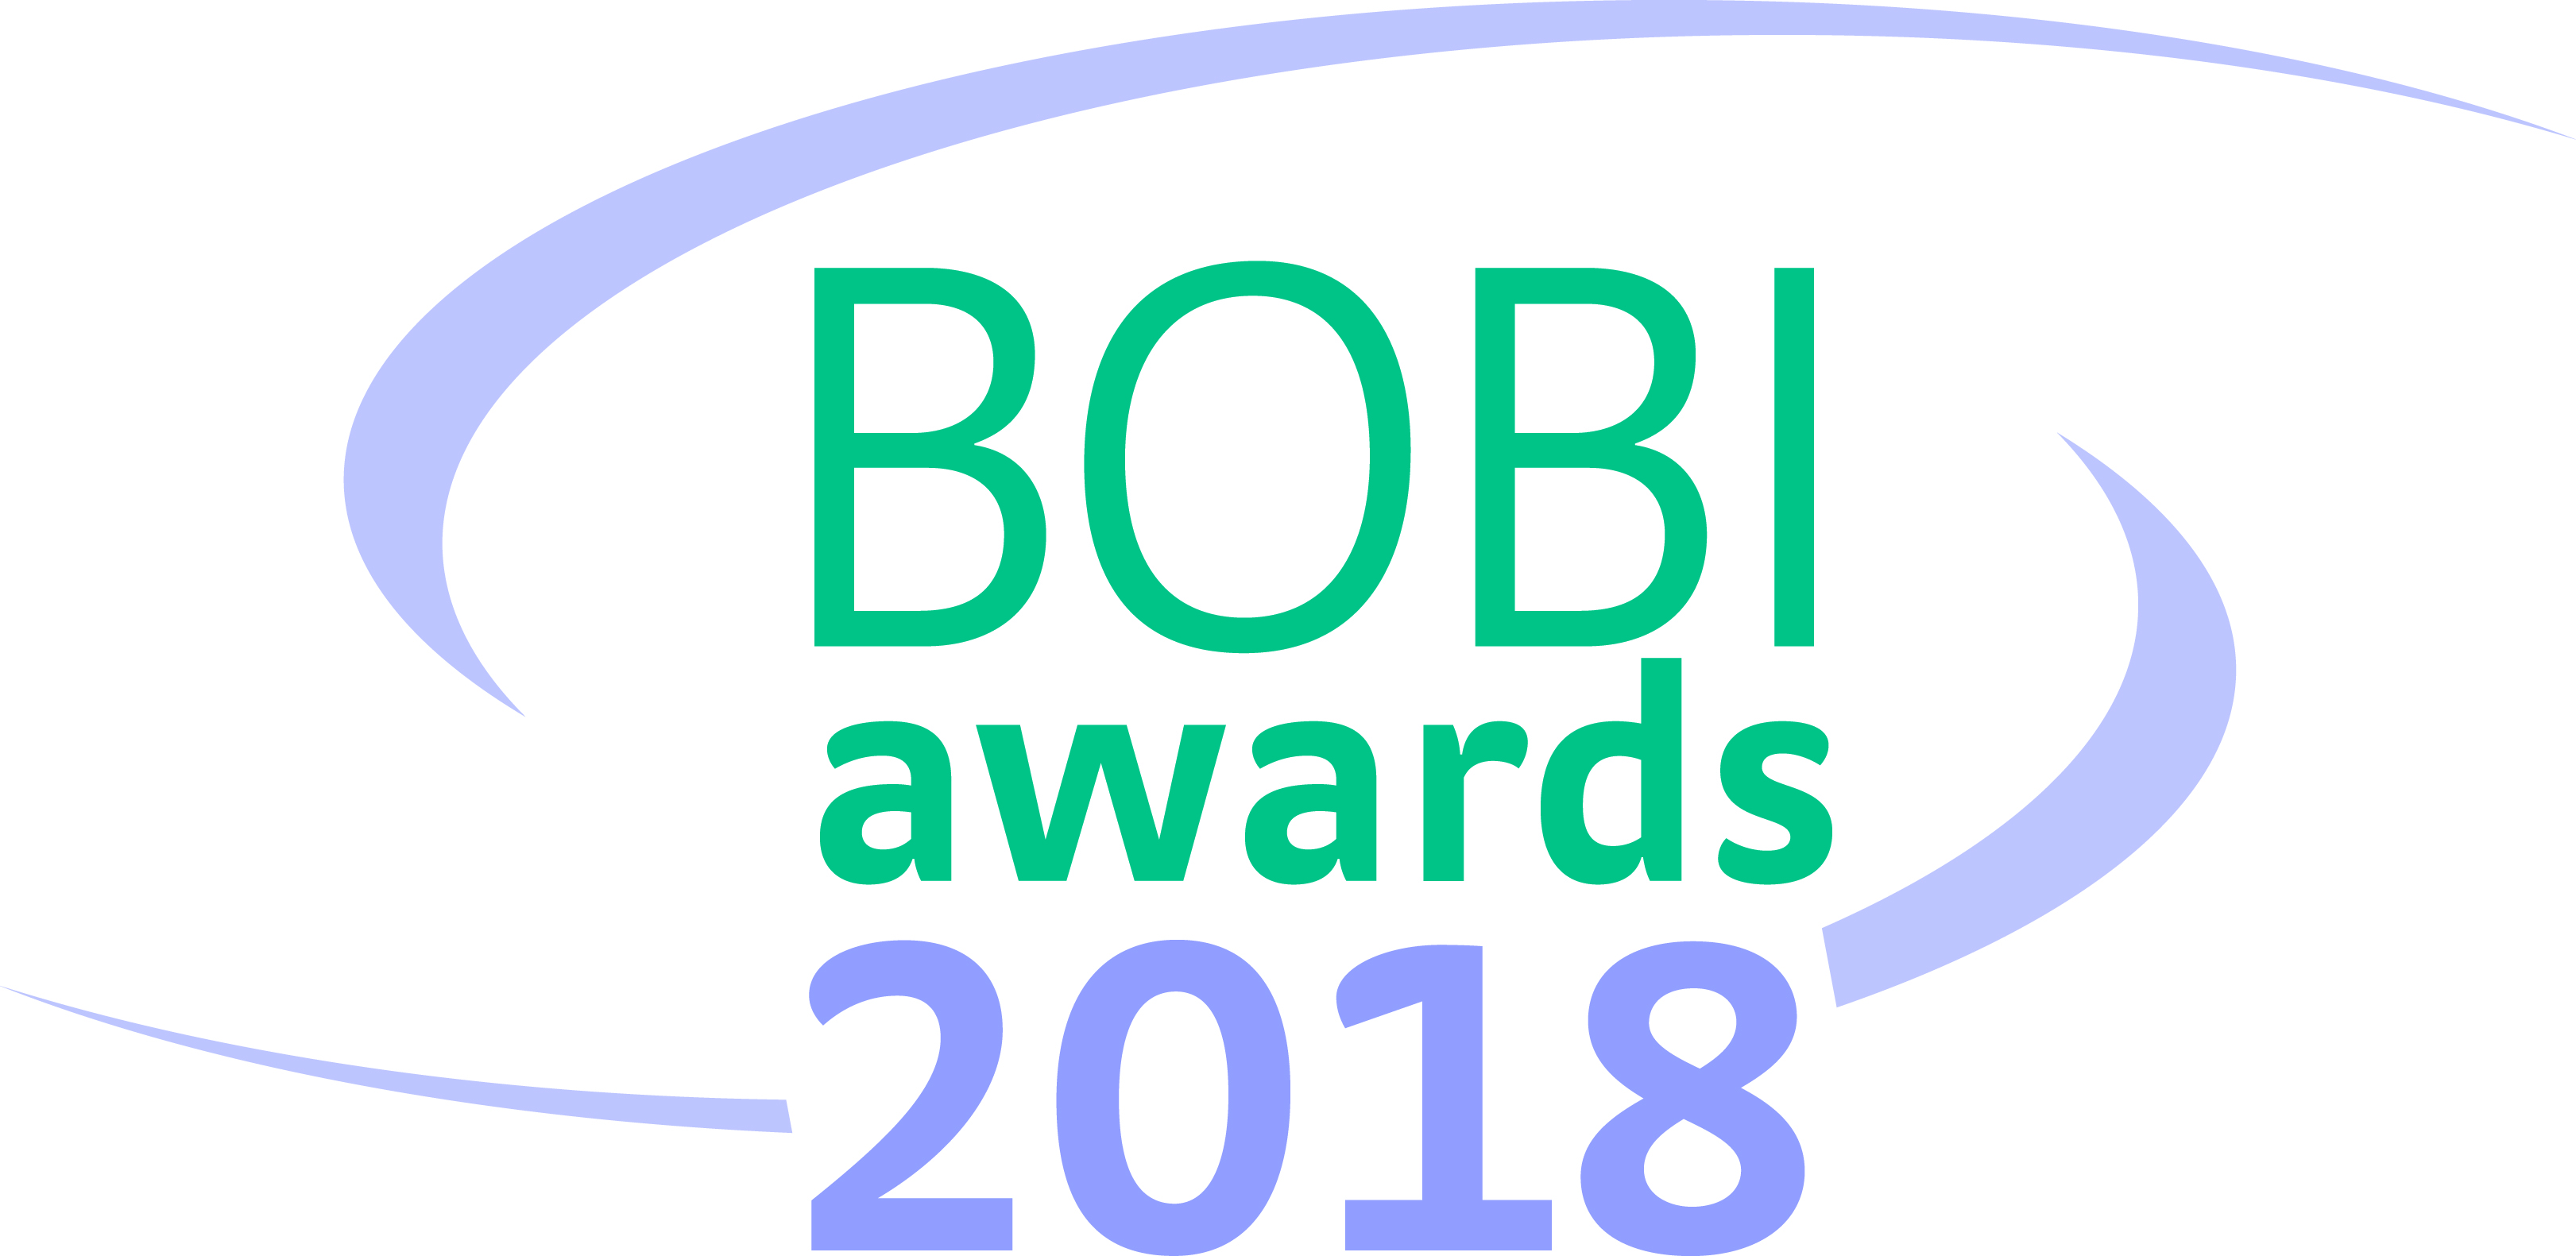 BOBI Awards 2018 - Best Business Impact!